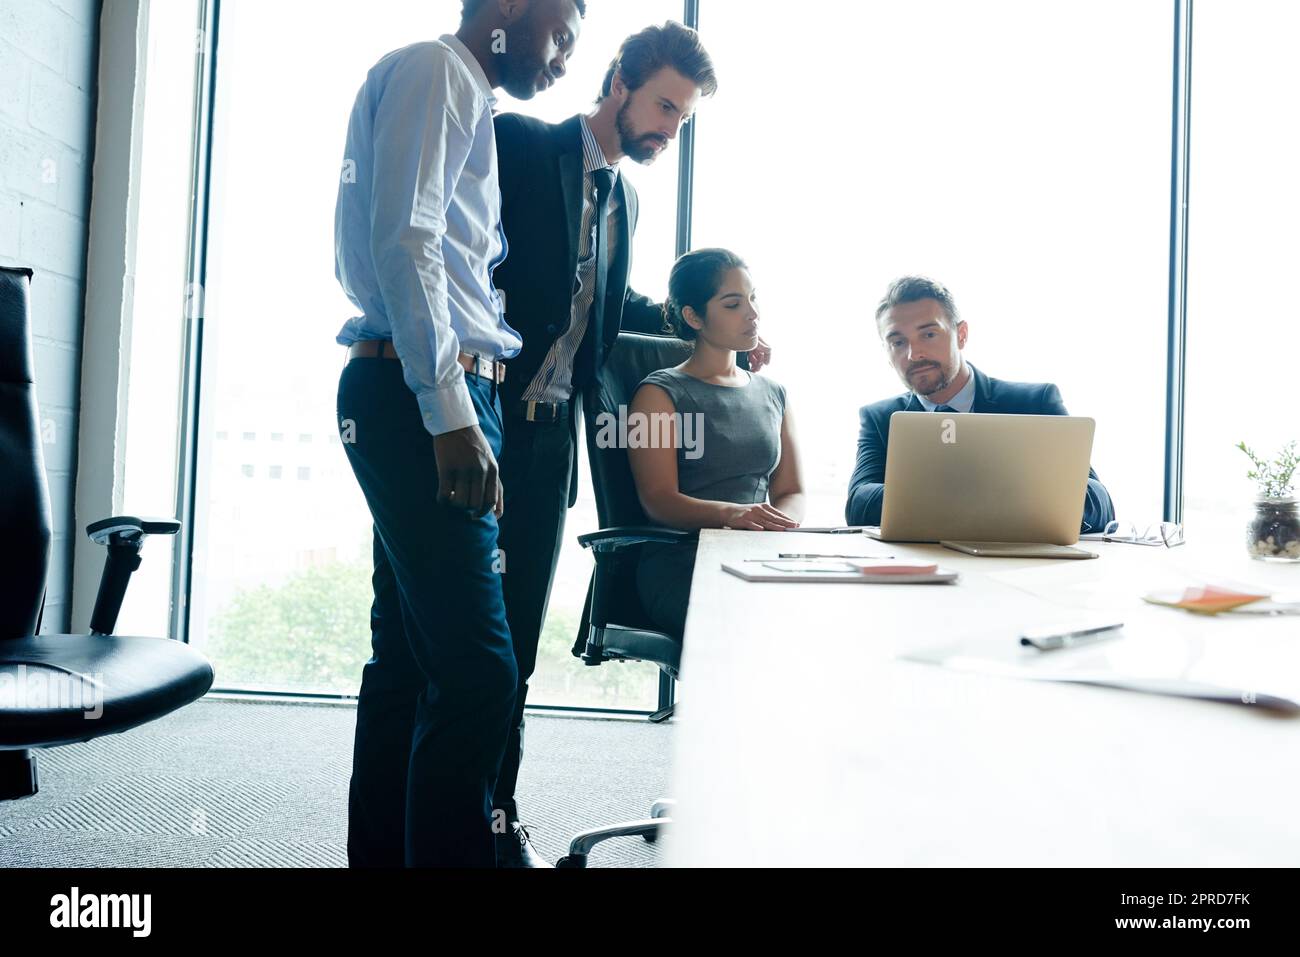 Teamarbeit, Vertrauen und gute Führung während eines Meetings, während ein Notebook für Innovation und Marketingforschung in einem Büro verwendet wird. Geschäftsleute und motivierte Geschäftsleute, die ihre Unternehmensvision diskutieren Stockfoto